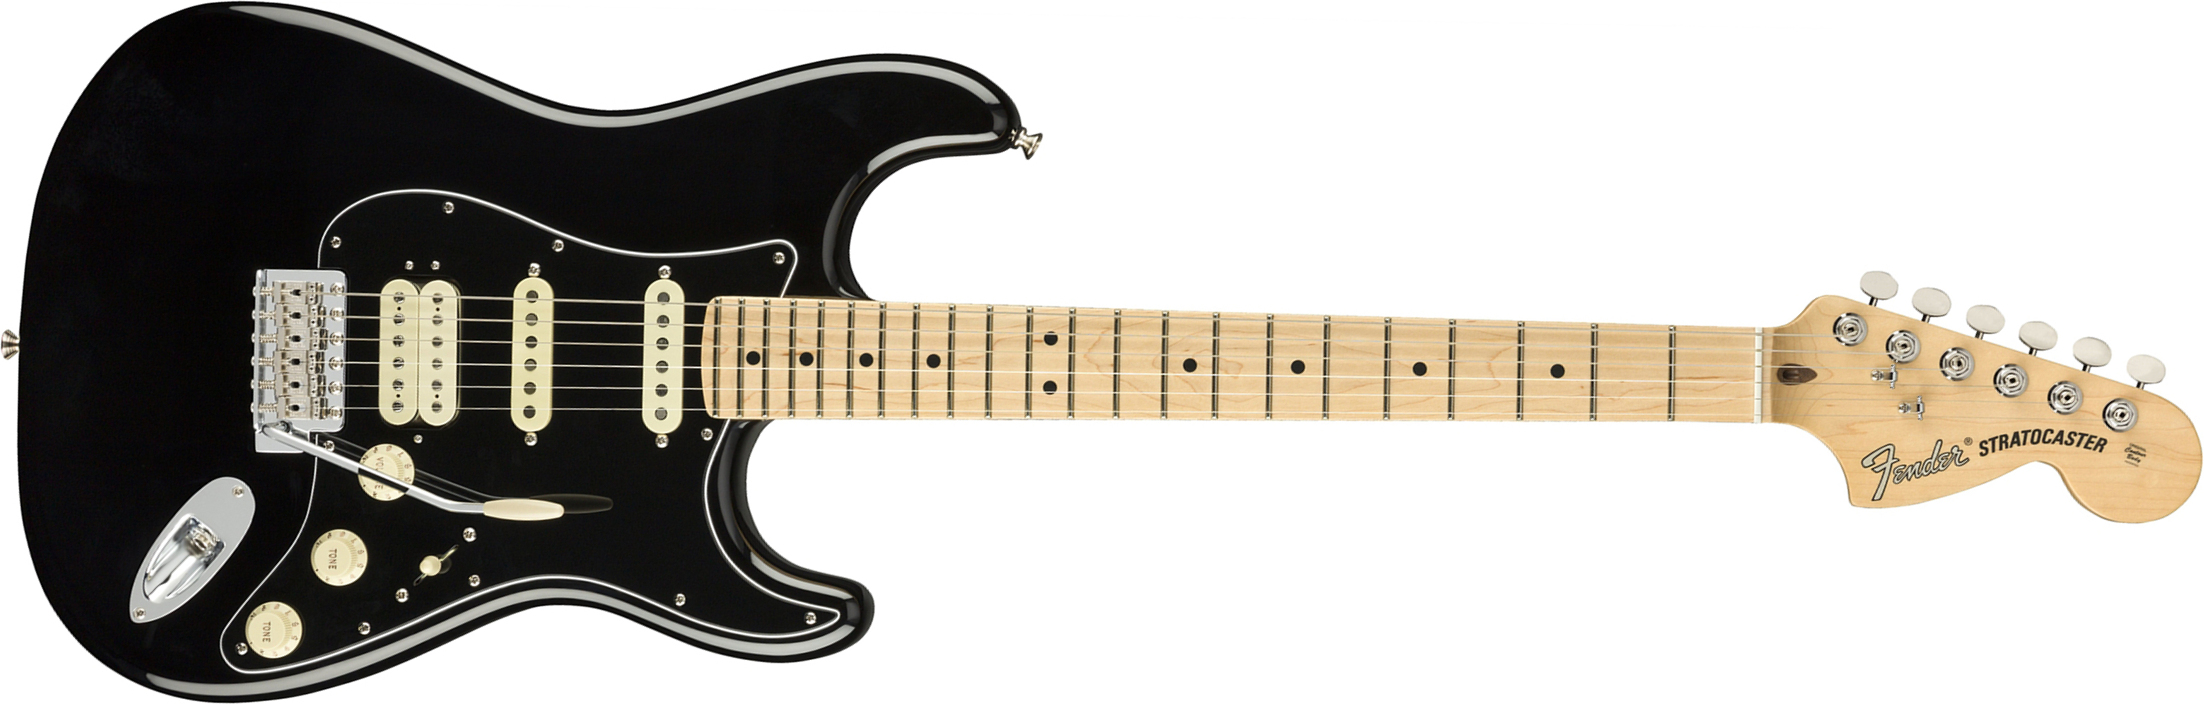 Fender Strat American Performer Usa Hss Mn - Black - Elektrische gitaar in Str-vorm - Main picture